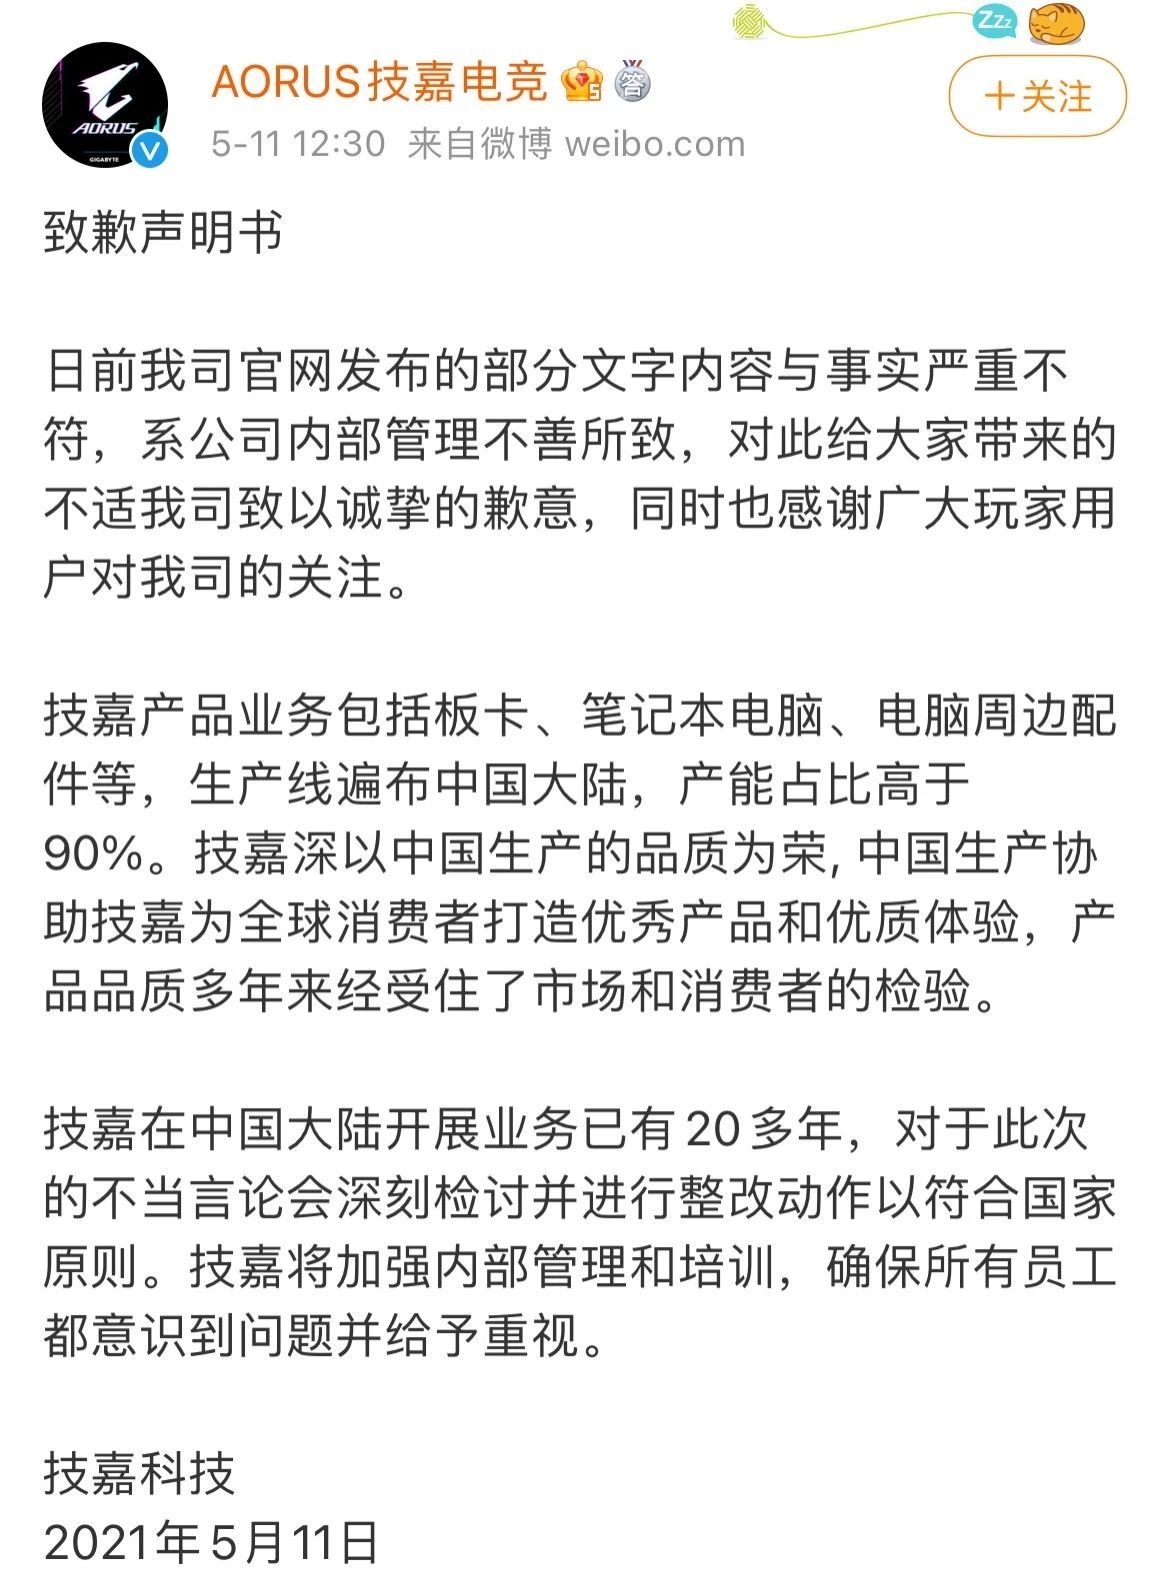 台湾技嘉科技公司“嘲讽中国制造”后紧急道歉，京东、苏宁等已下架相关产品